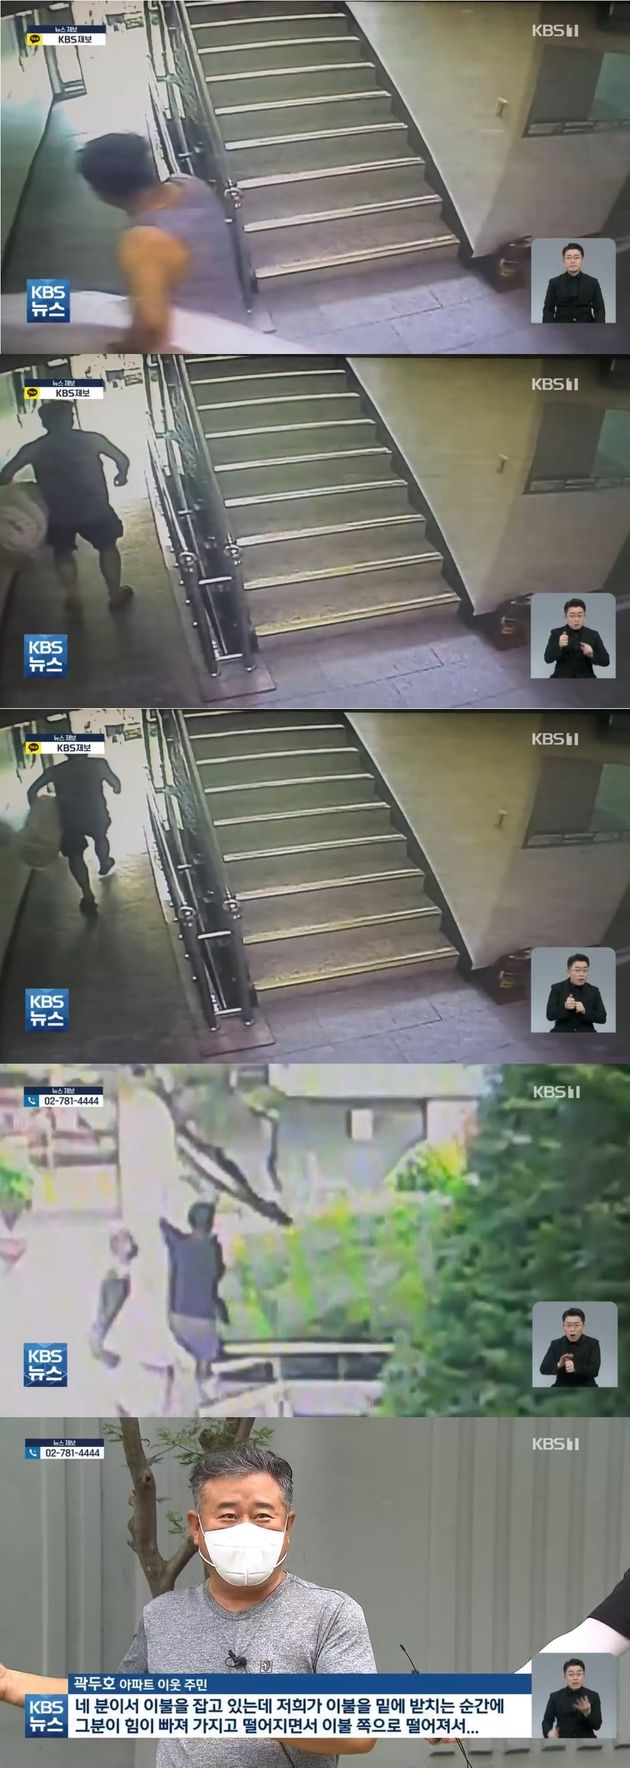 이웃주민이 이불을 가지고 나오는 모습이 담긴 CCTV 영상과 이불을 잡고 있던 사람 중 한 명인 곽두호 씨의 인터뷰.